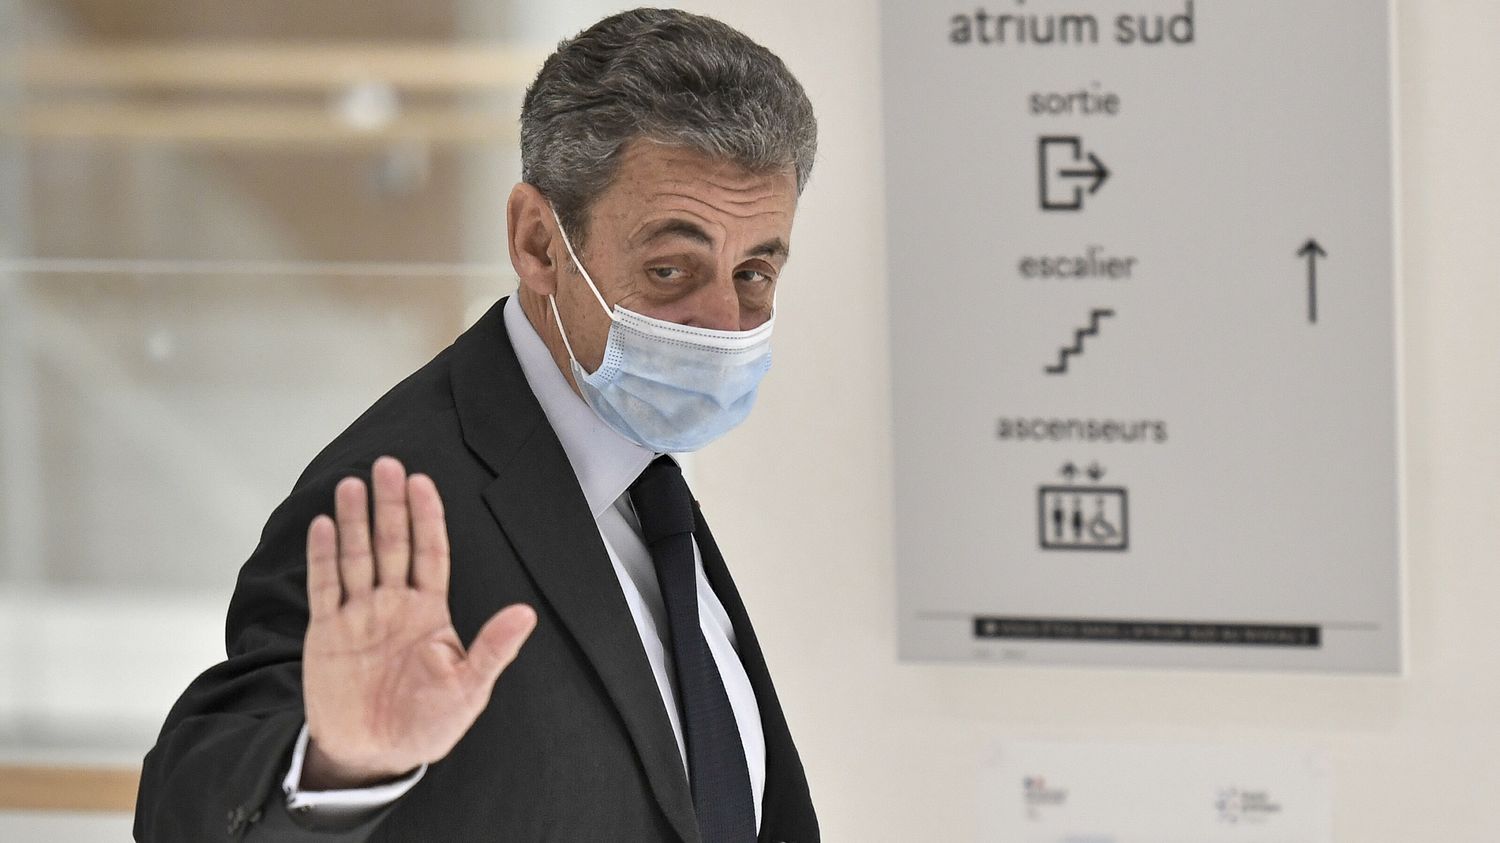 "Je ne reconnais aucune de ces infamies", se défend Nicolas Sarkozy à l'audience